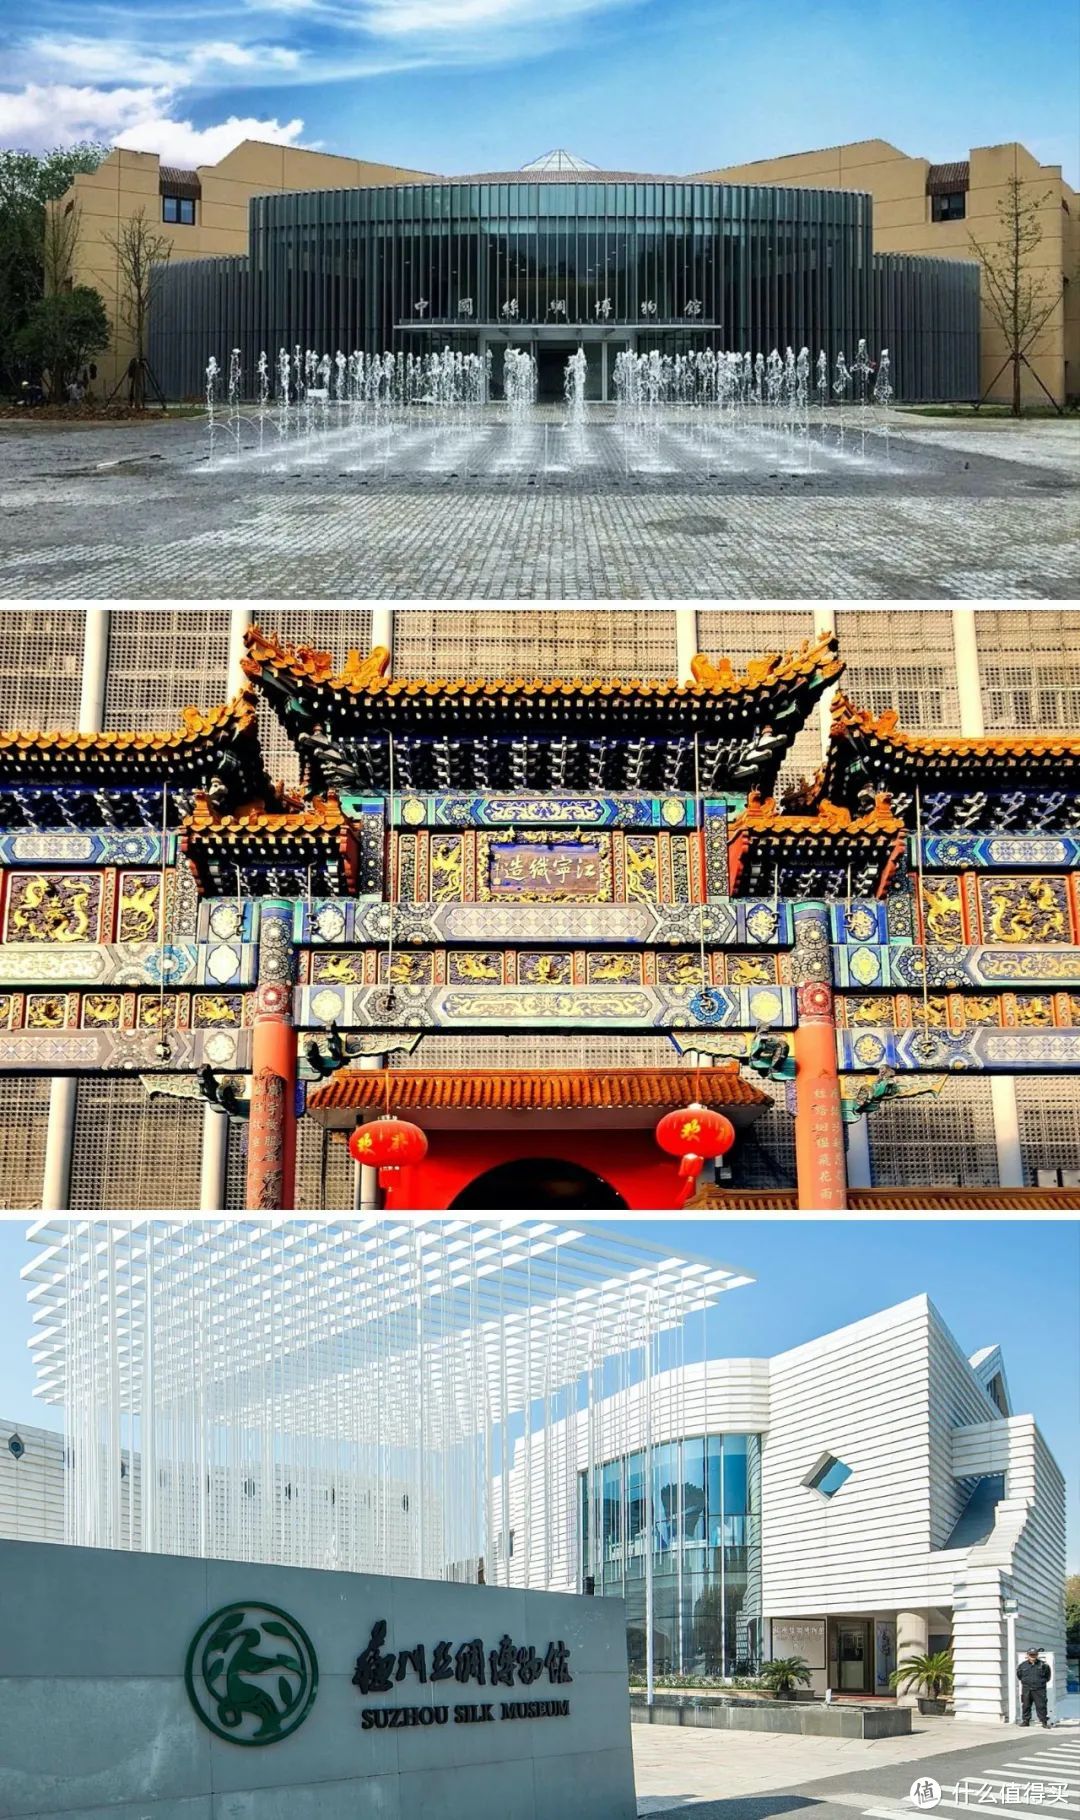 从上至下依次为中国丝绸博物馆（地处杭州，属国家一级博物馆）、南京云锦博物馆、苏州丝绸博物馆。（图源网络）